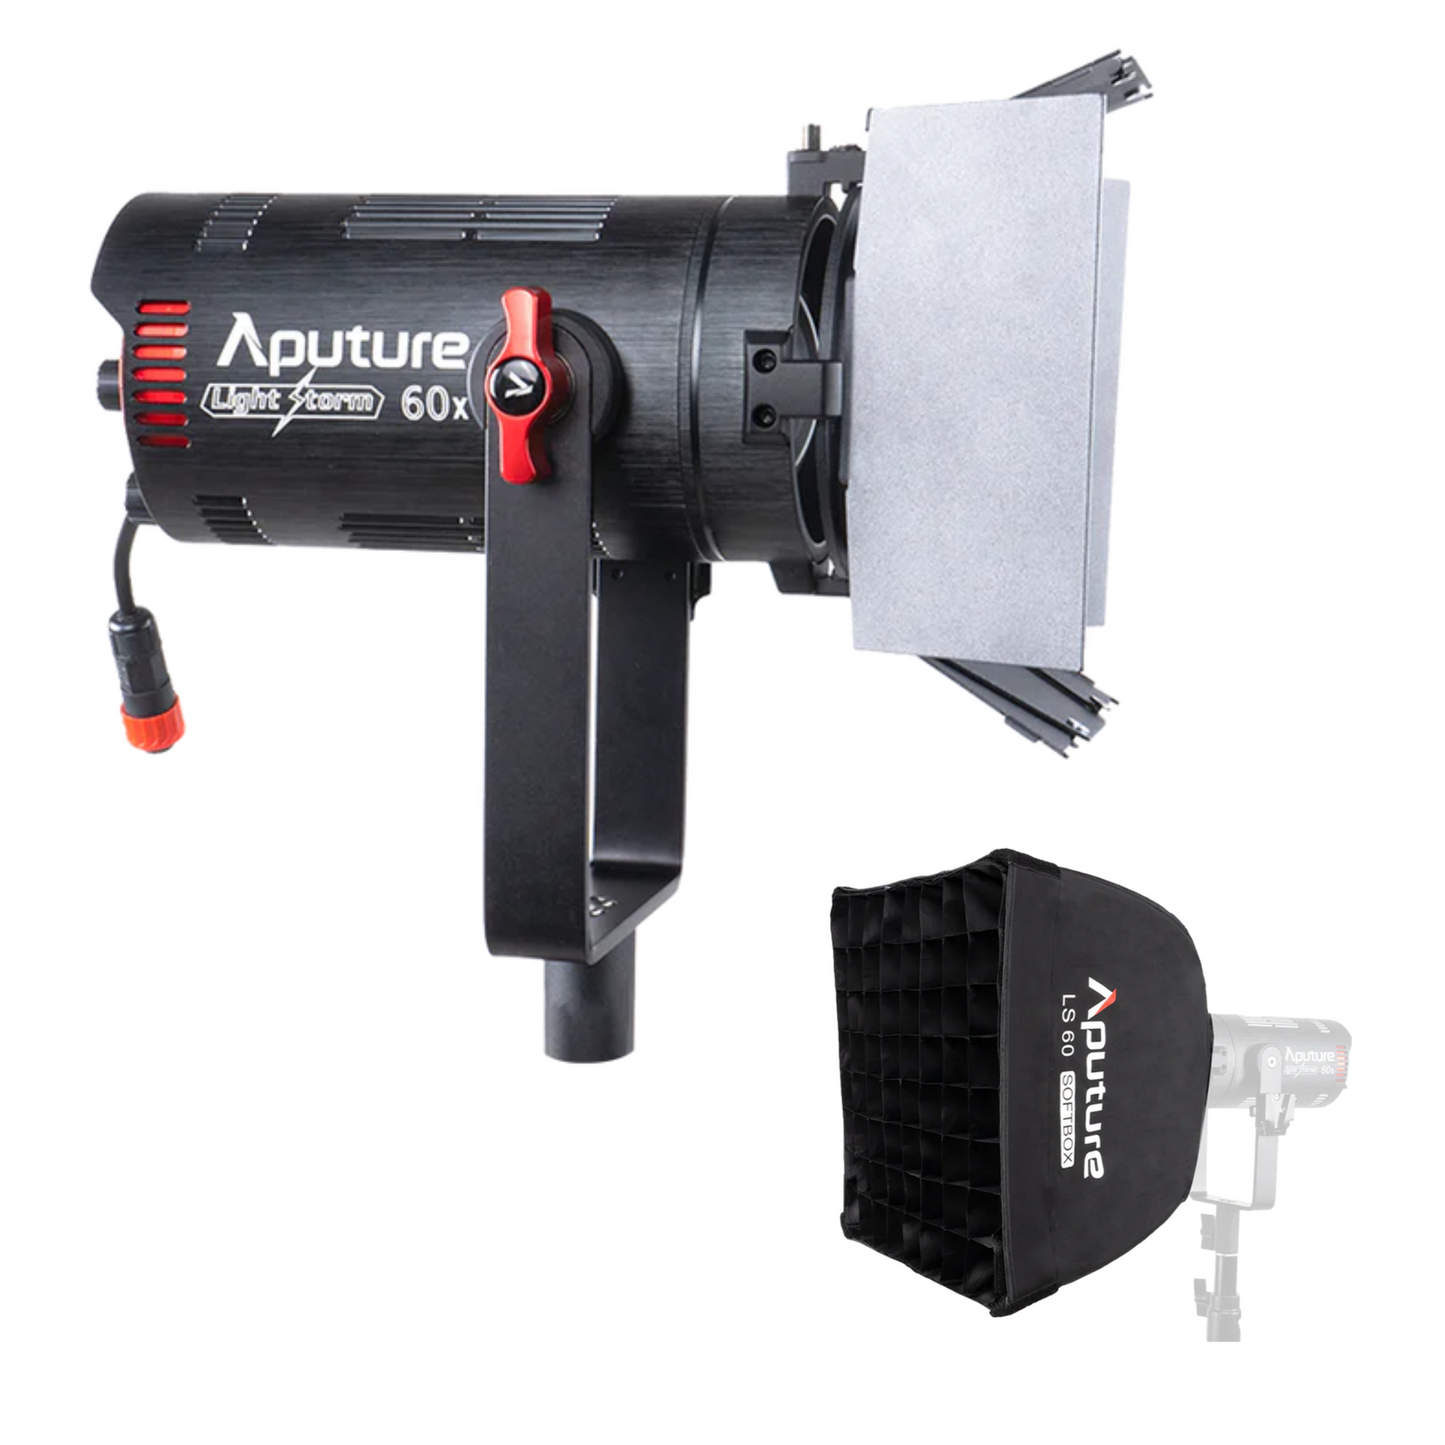 Aputure LS 60X バイカラー LED ビデオライト Sidus アプリコントロールをサポート